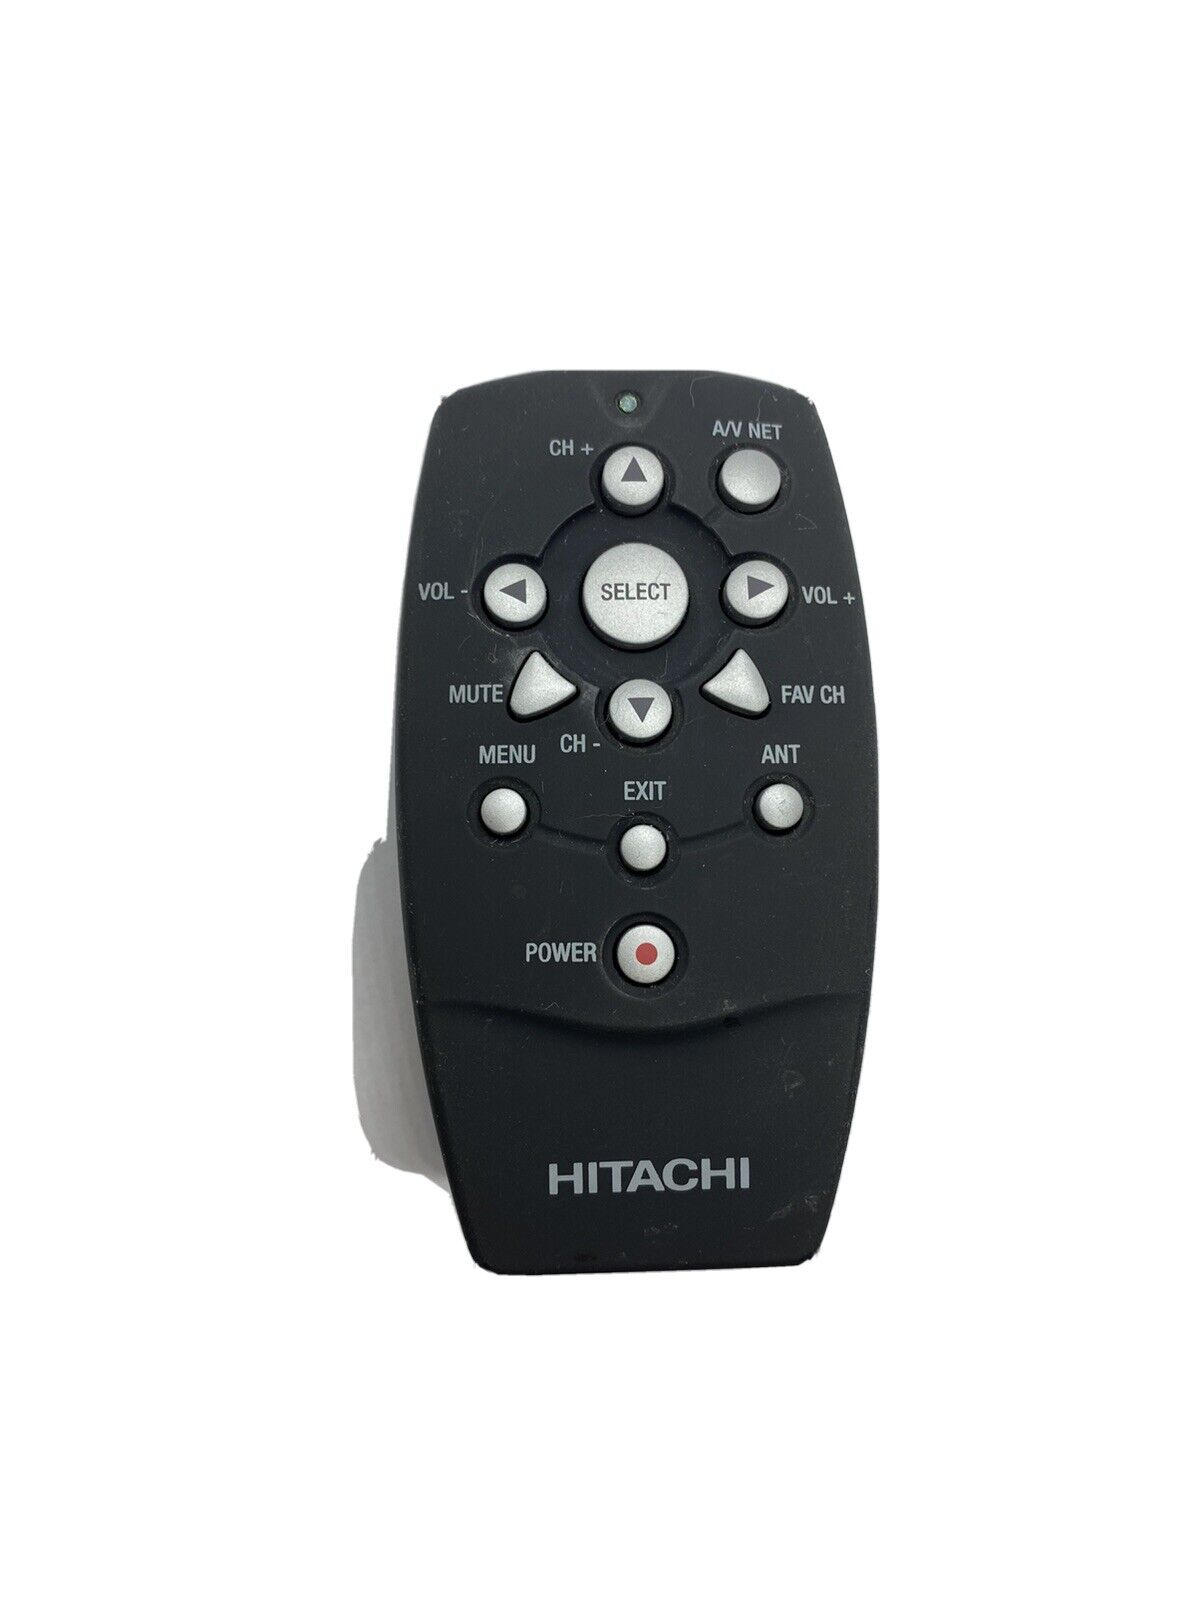 UltraVision HDT Series 42HDT50